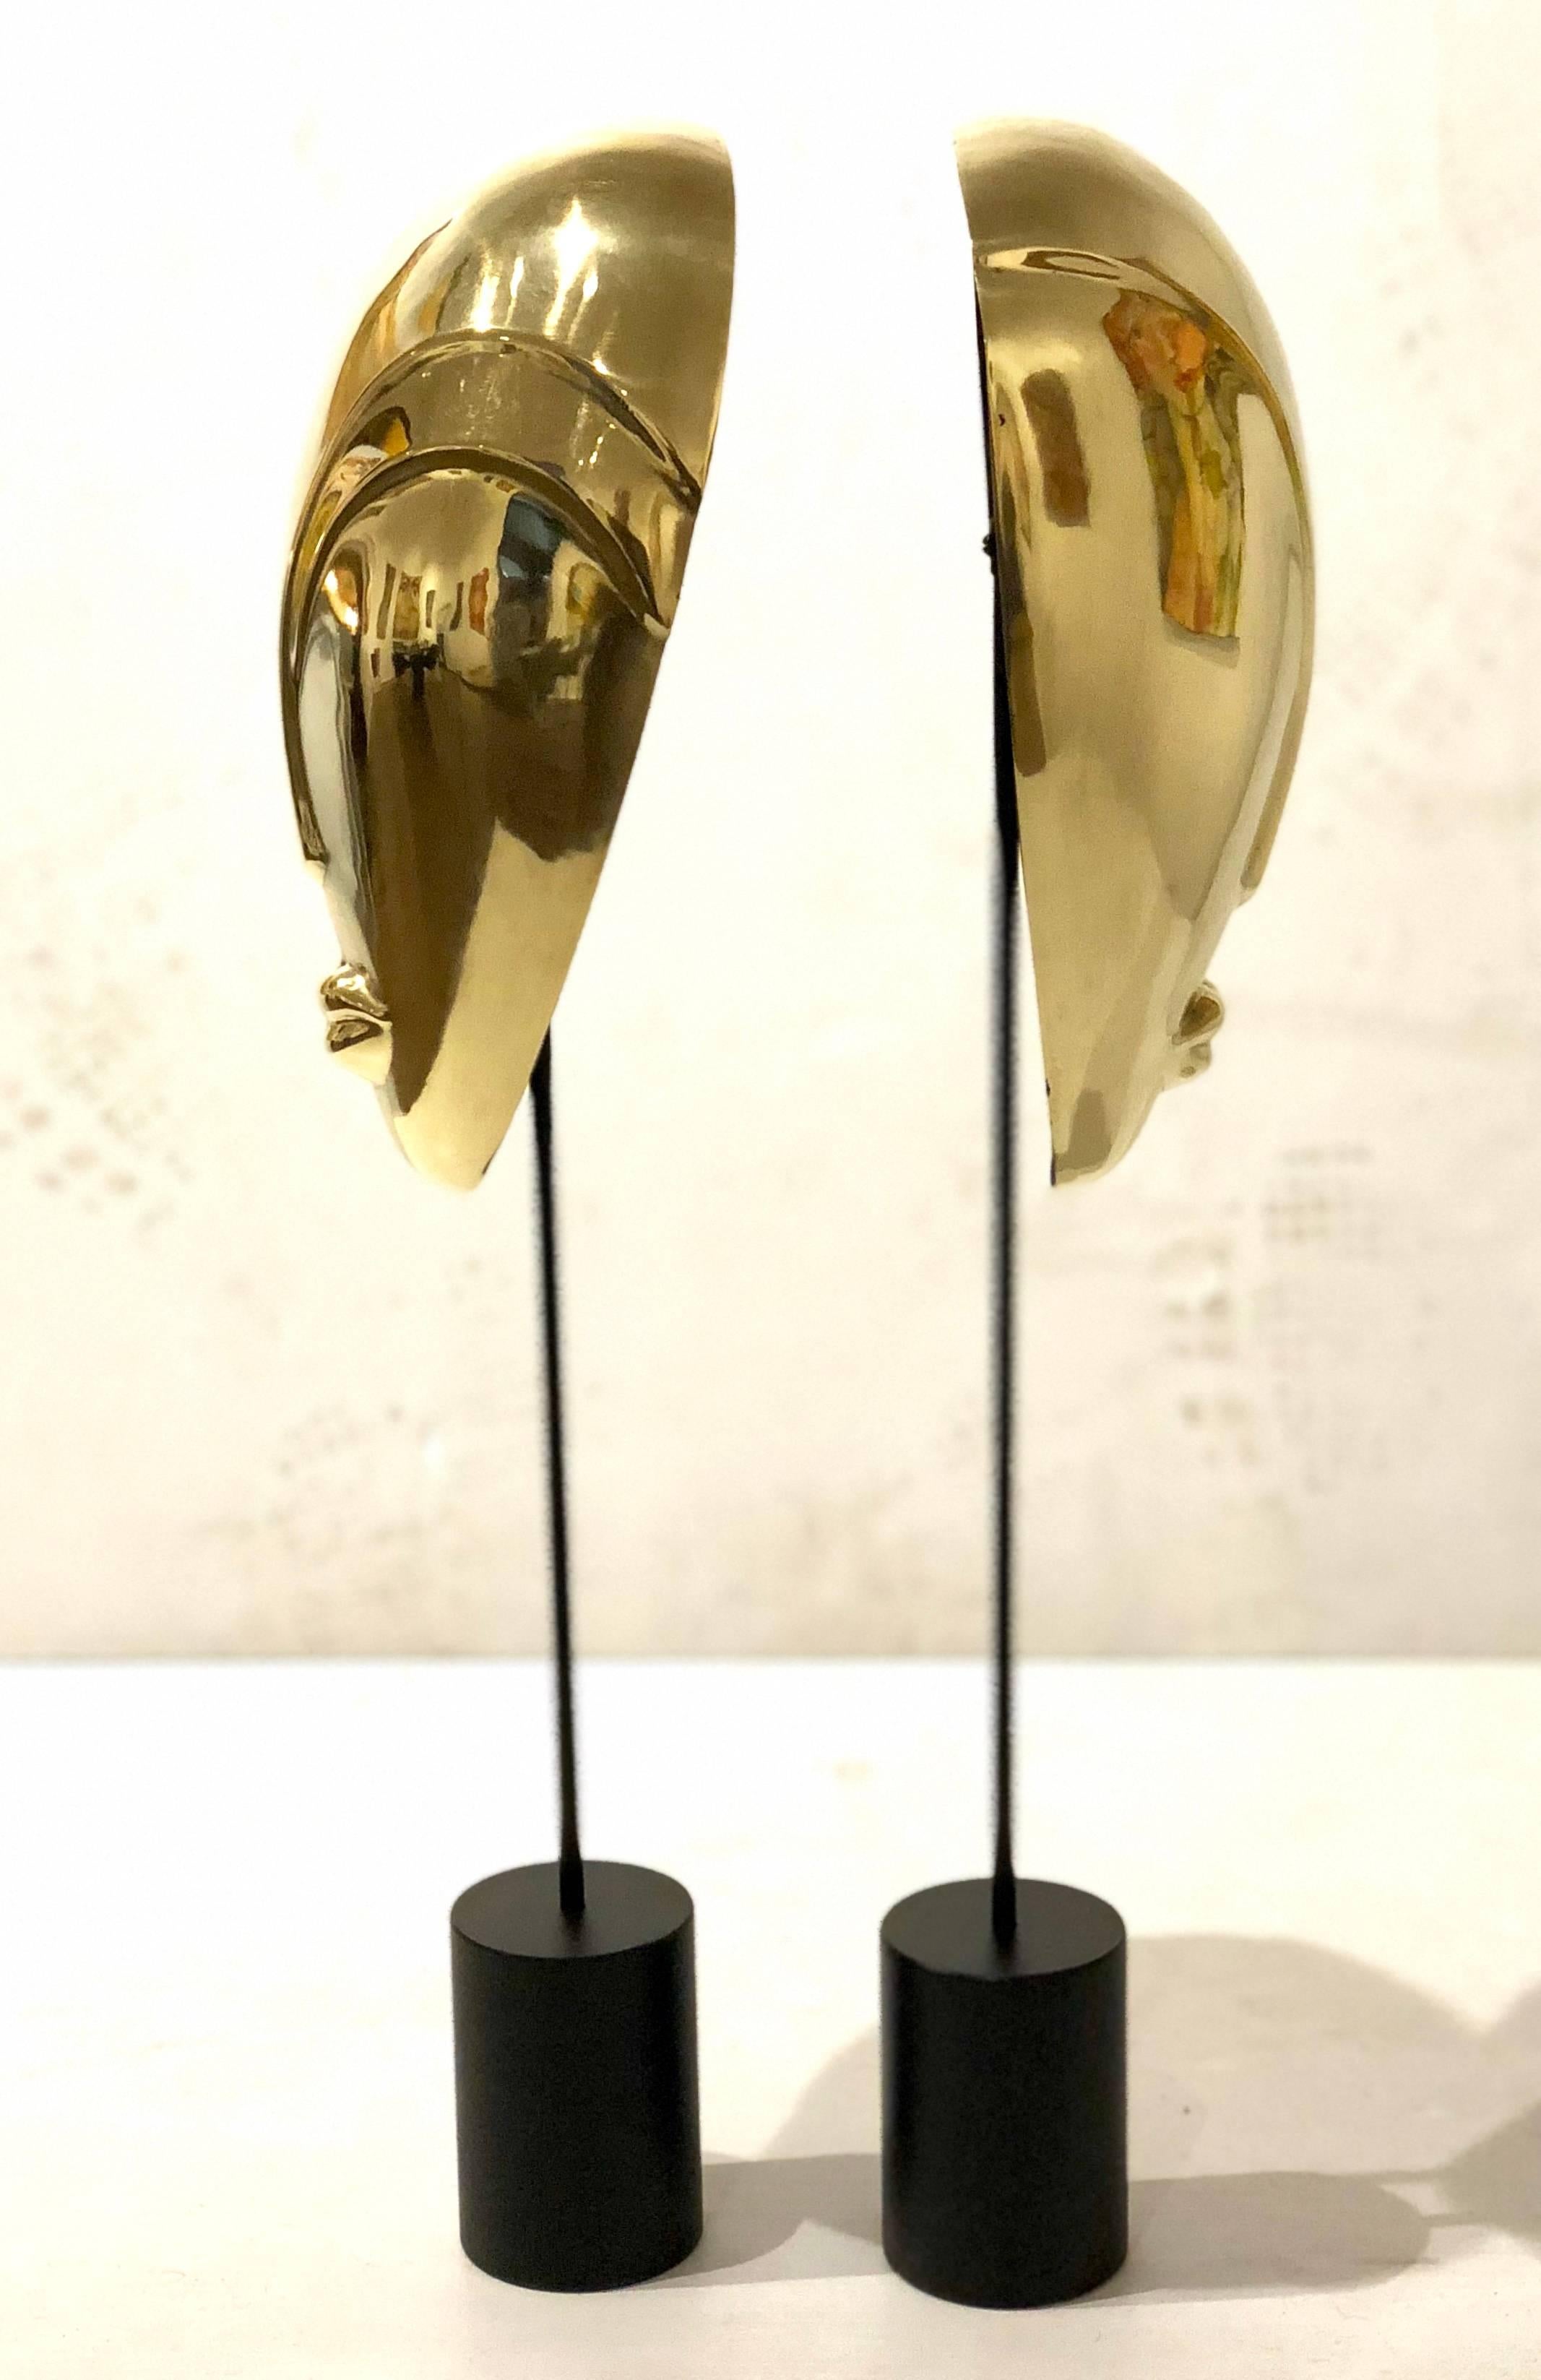 Hong Kong Decorative Pair of Brass Masks Sculptures Alien Faces Art Deco on Stands